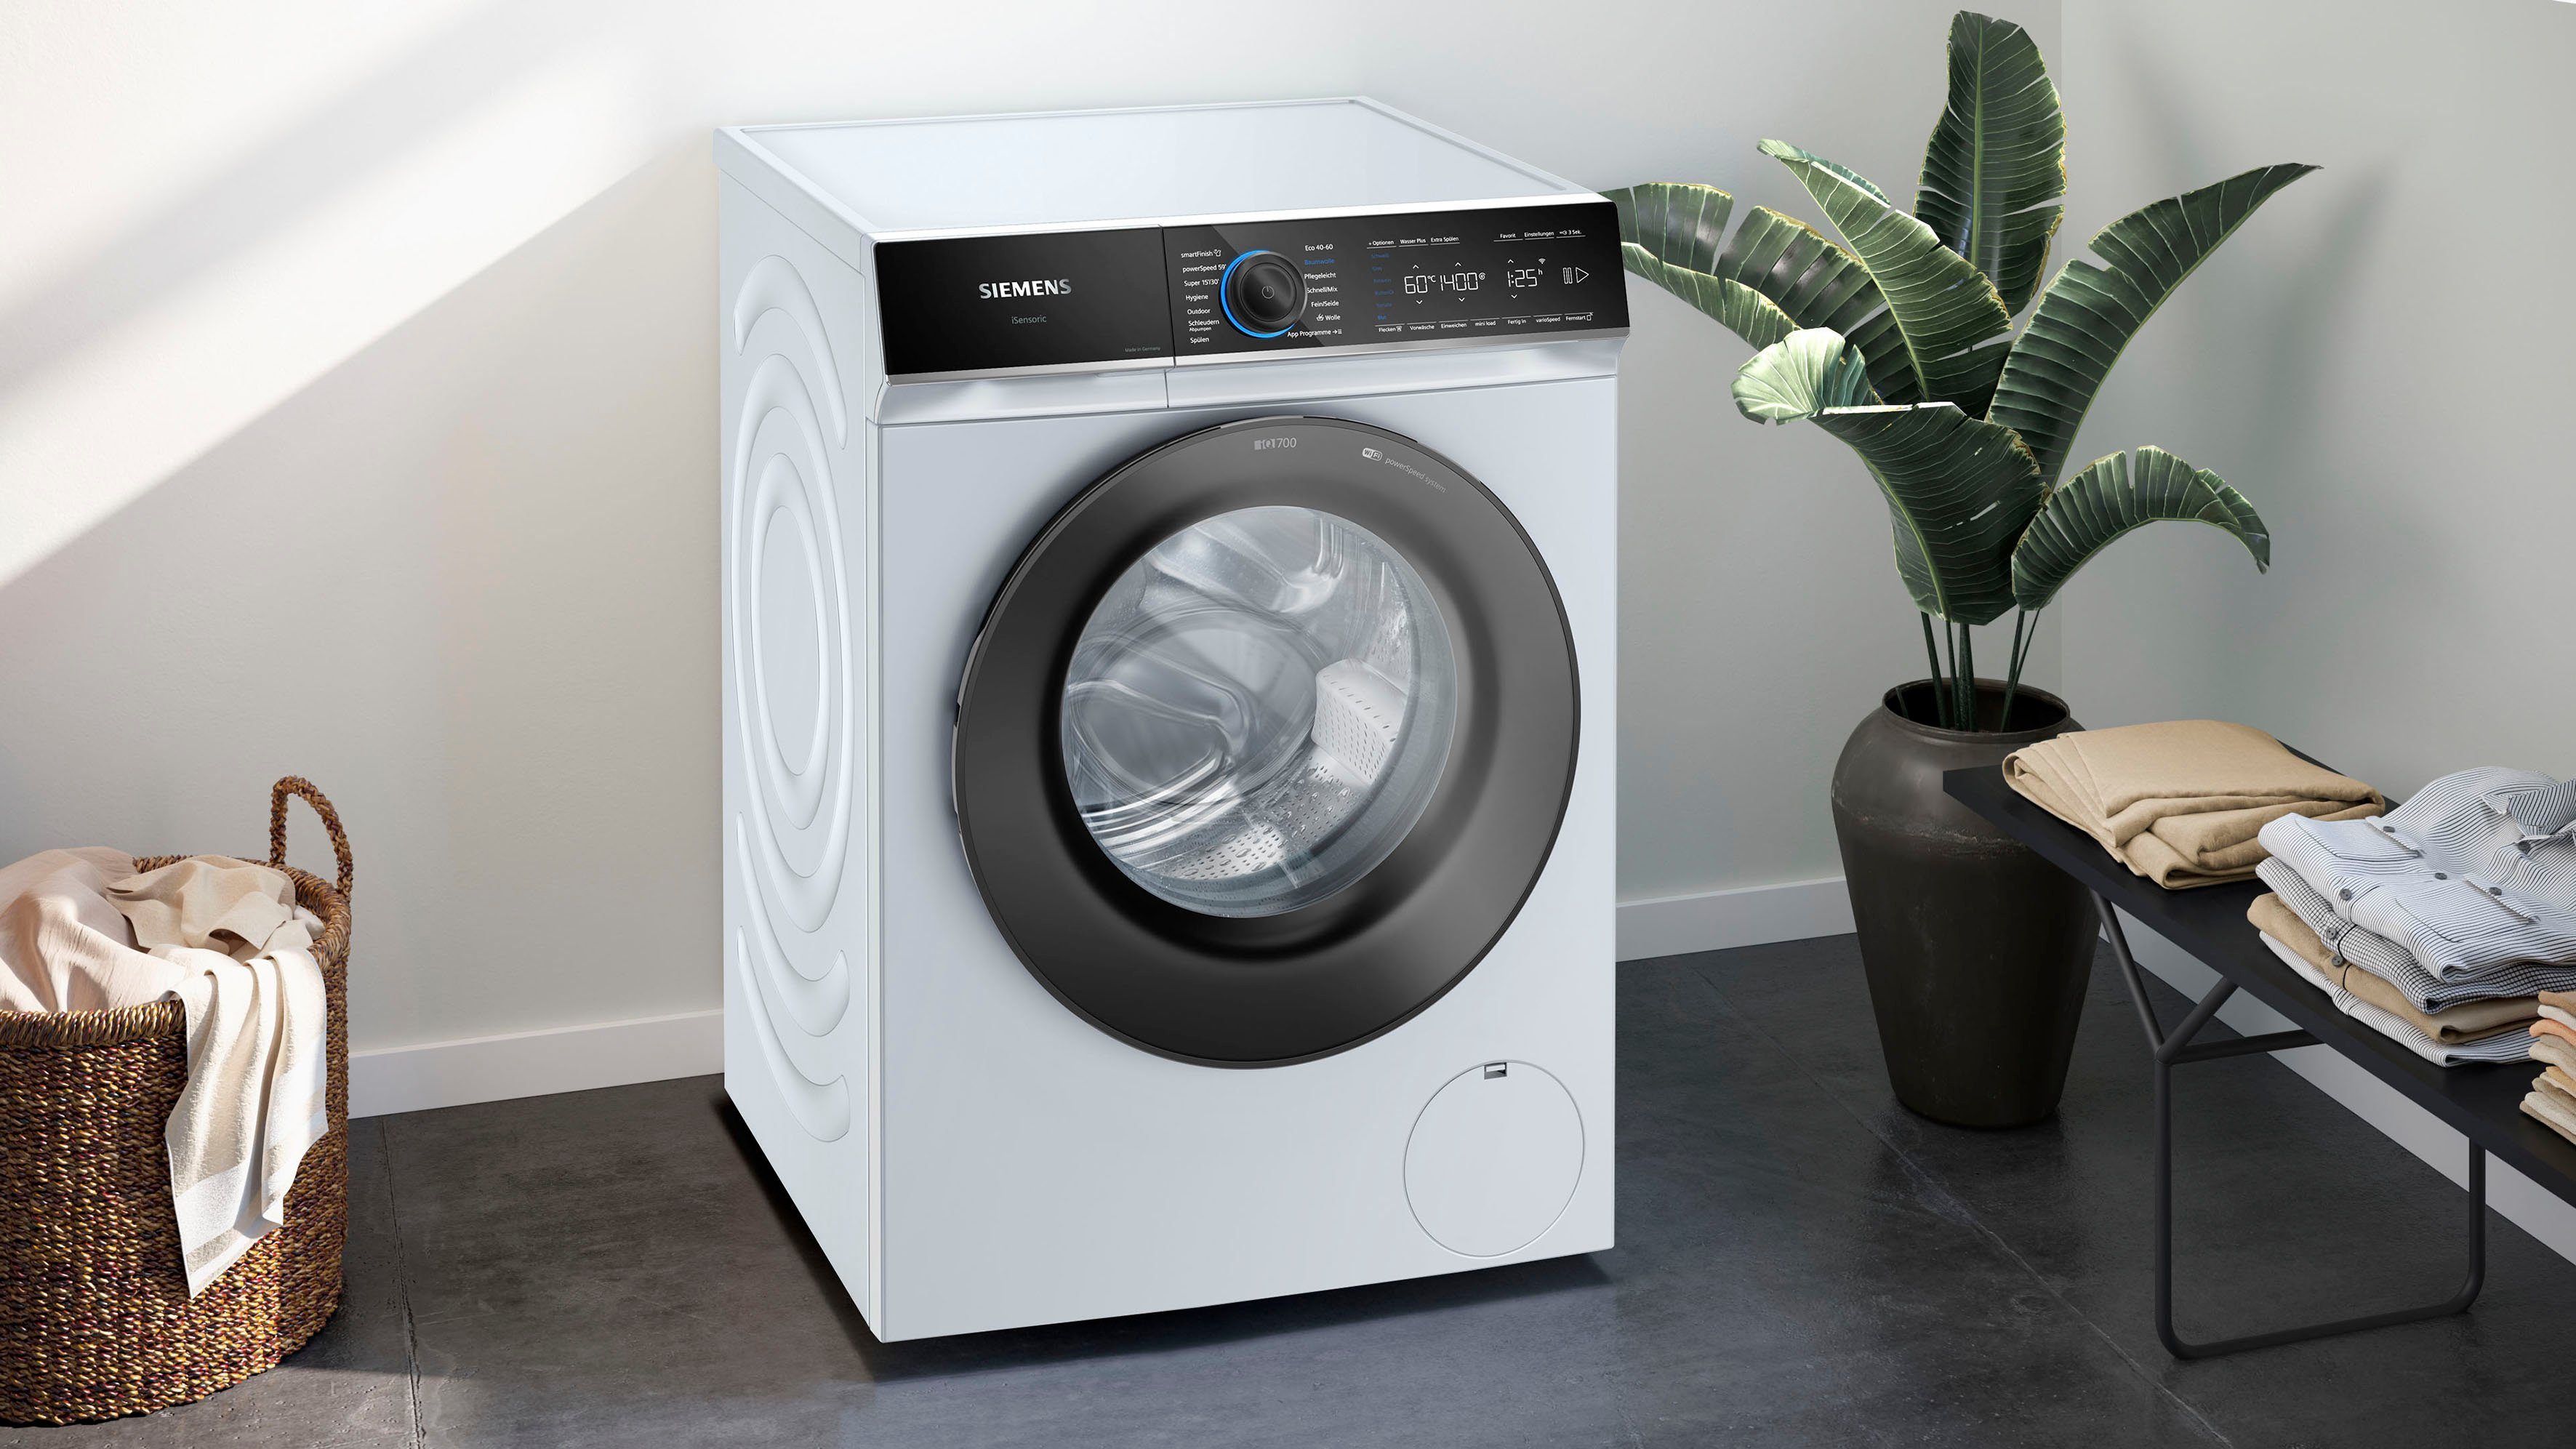 SIEMENS 9 Knitterfalten Dampf sämtliche Waschmaschine iQ700 U/min, kg, glättet 1400 dank – smartFinish WG44B20Z0,